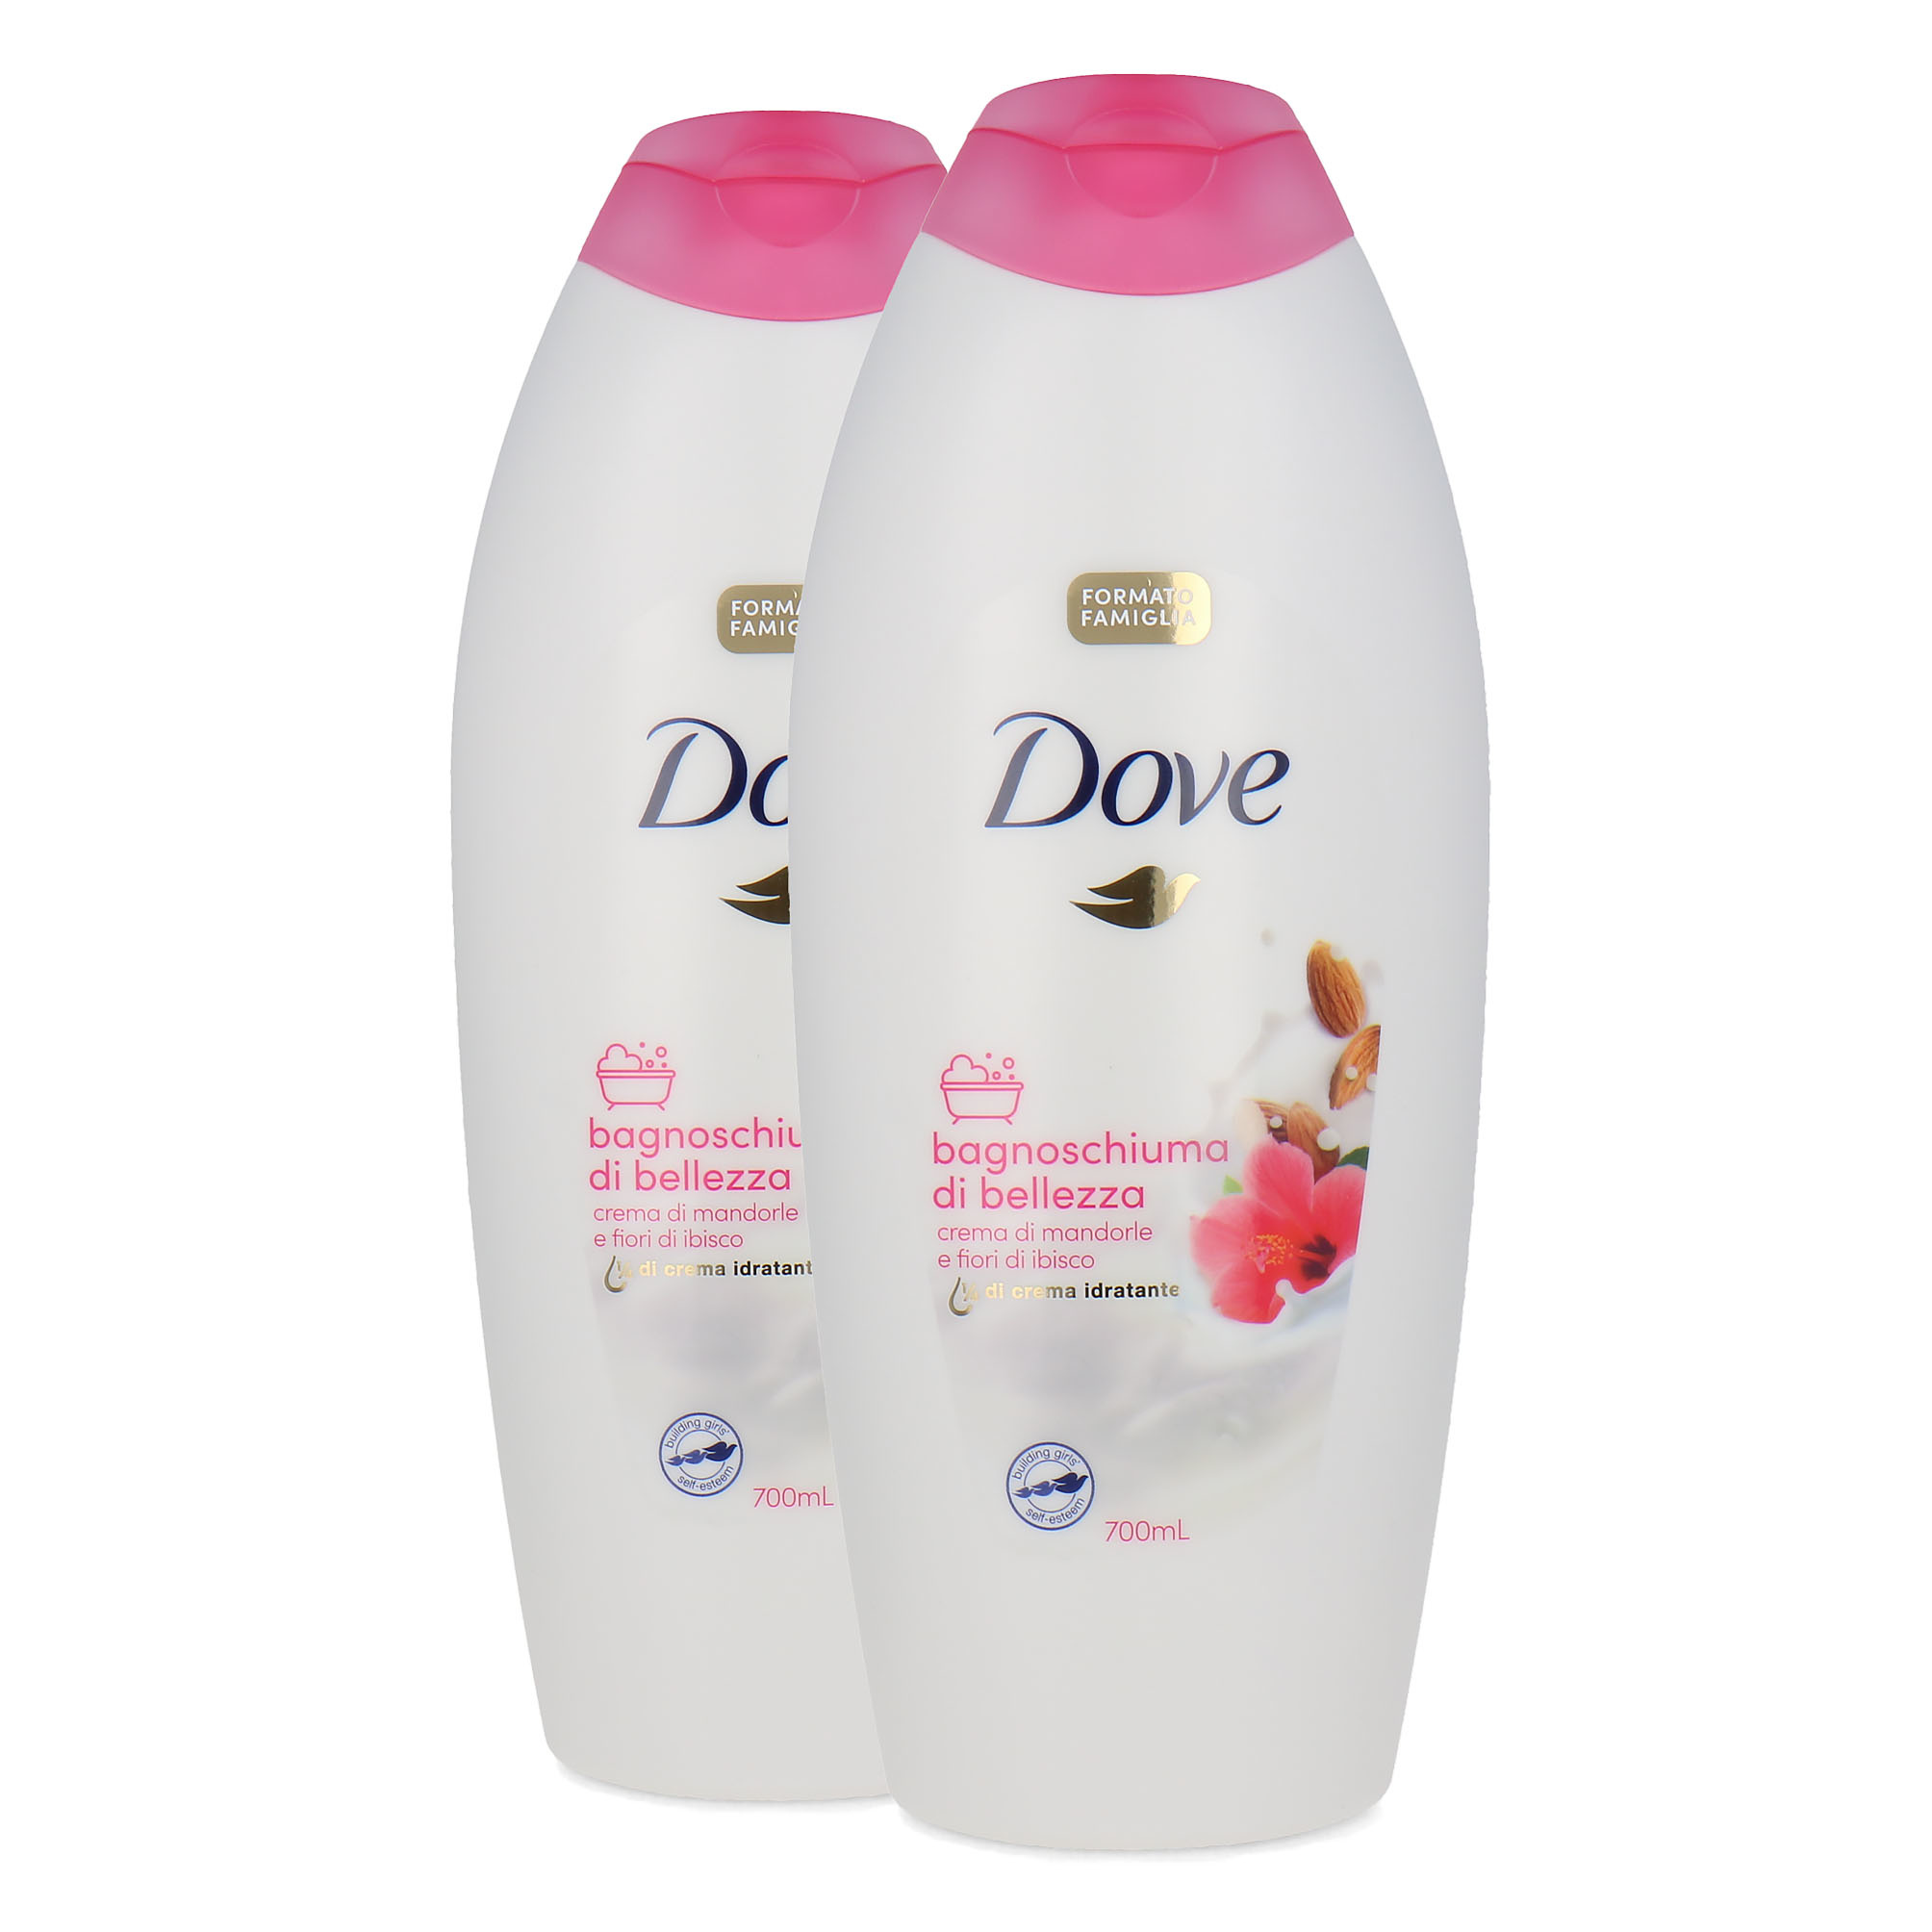 Dove Caring Bath 2 stuks à 700 ml - Almond Cream And Hibiscus Flowers (Texte italien)